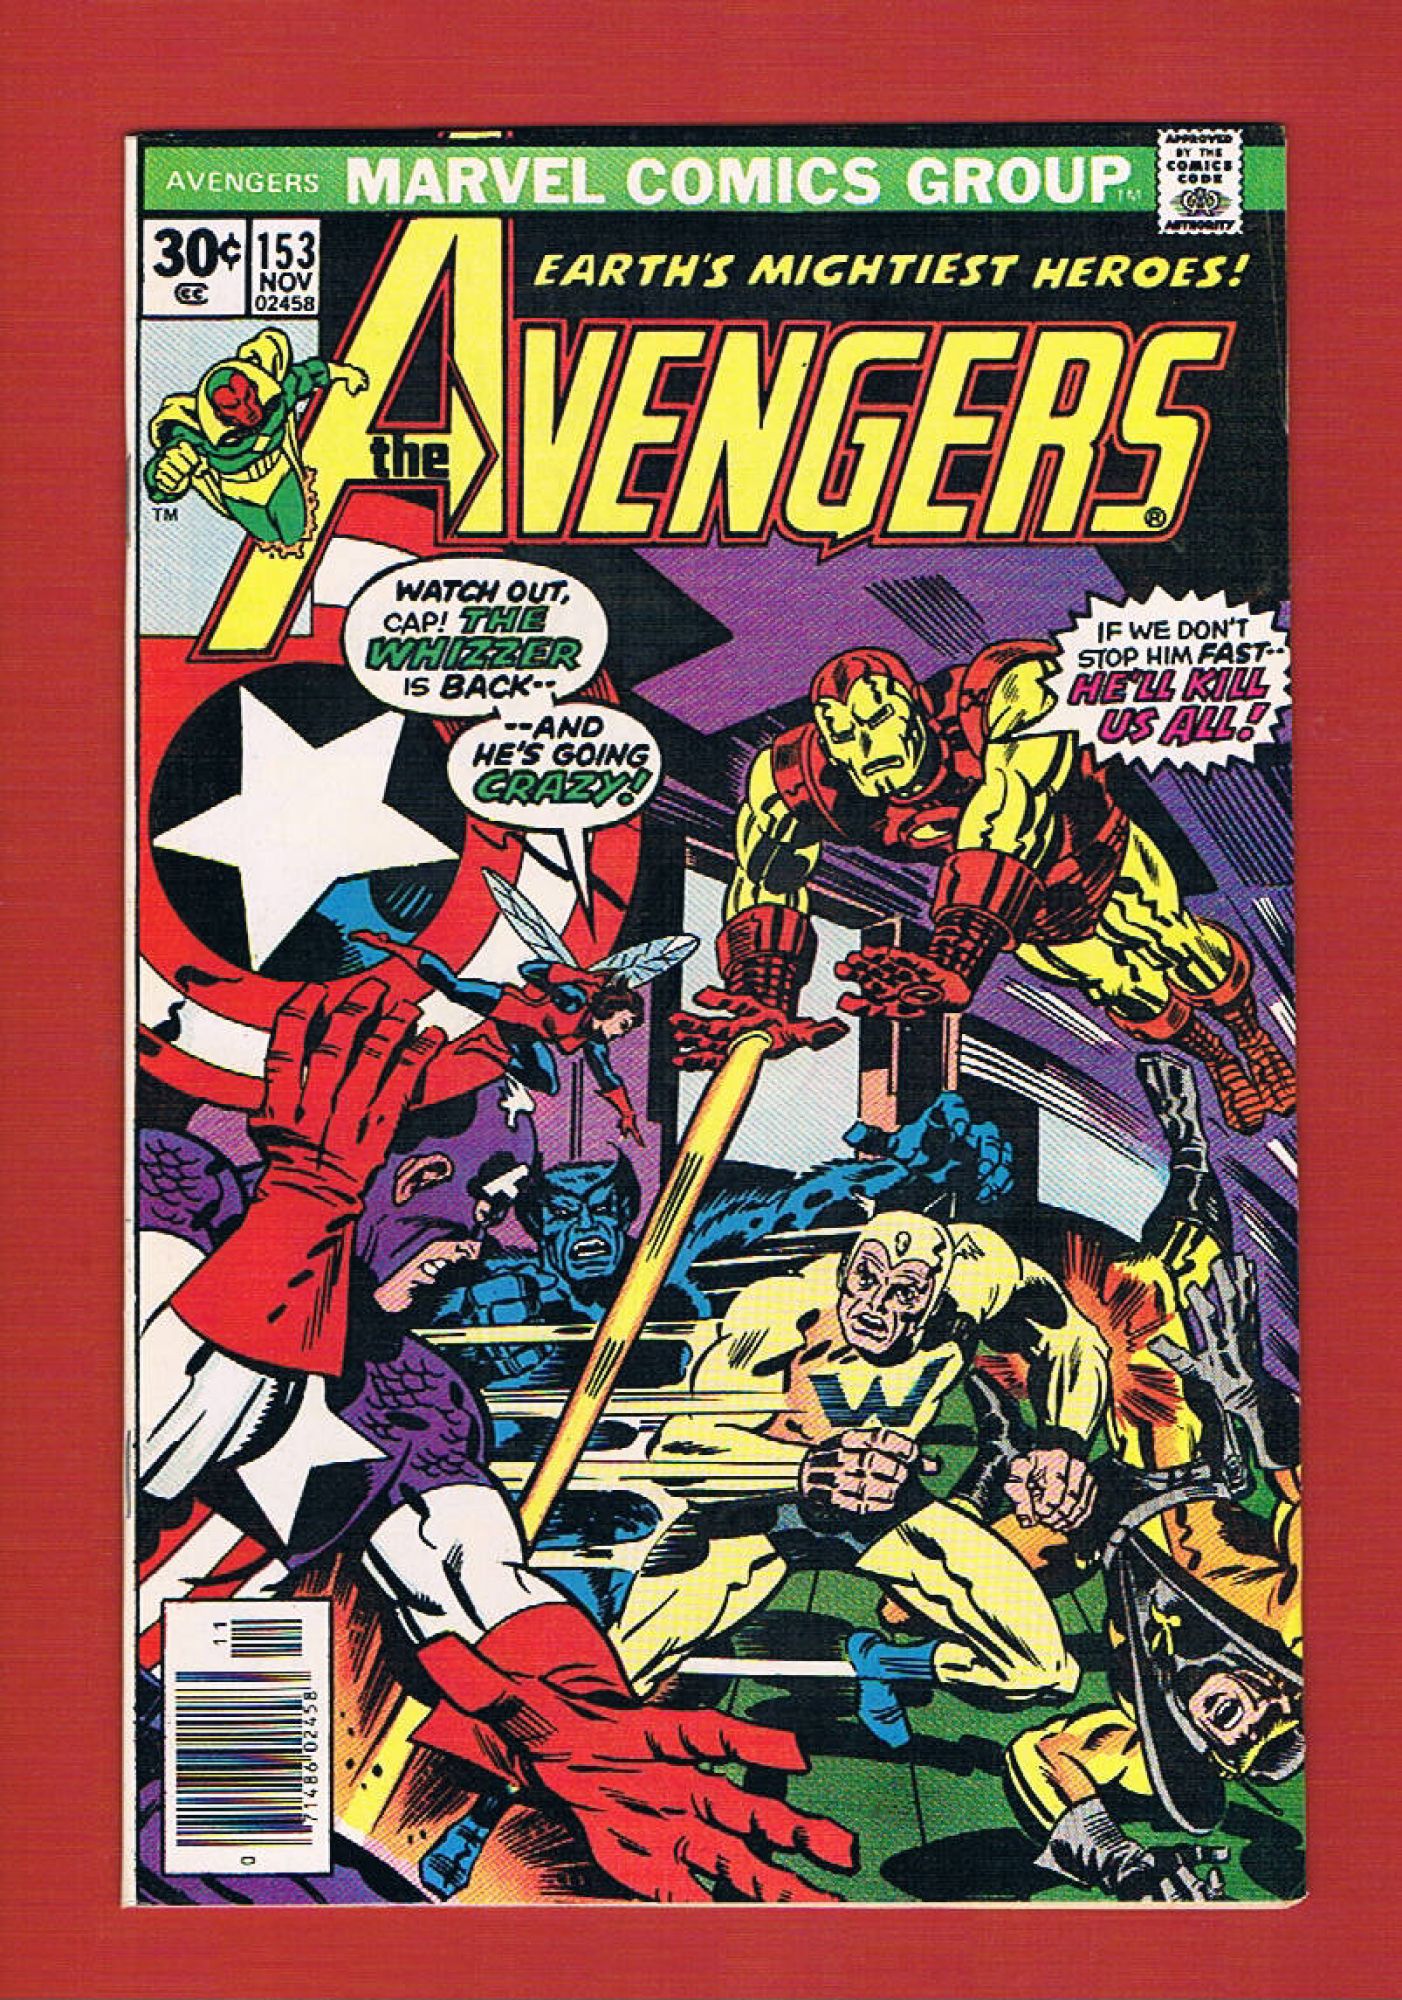 Avengers #153, Nov 1976, 8.5 VF+